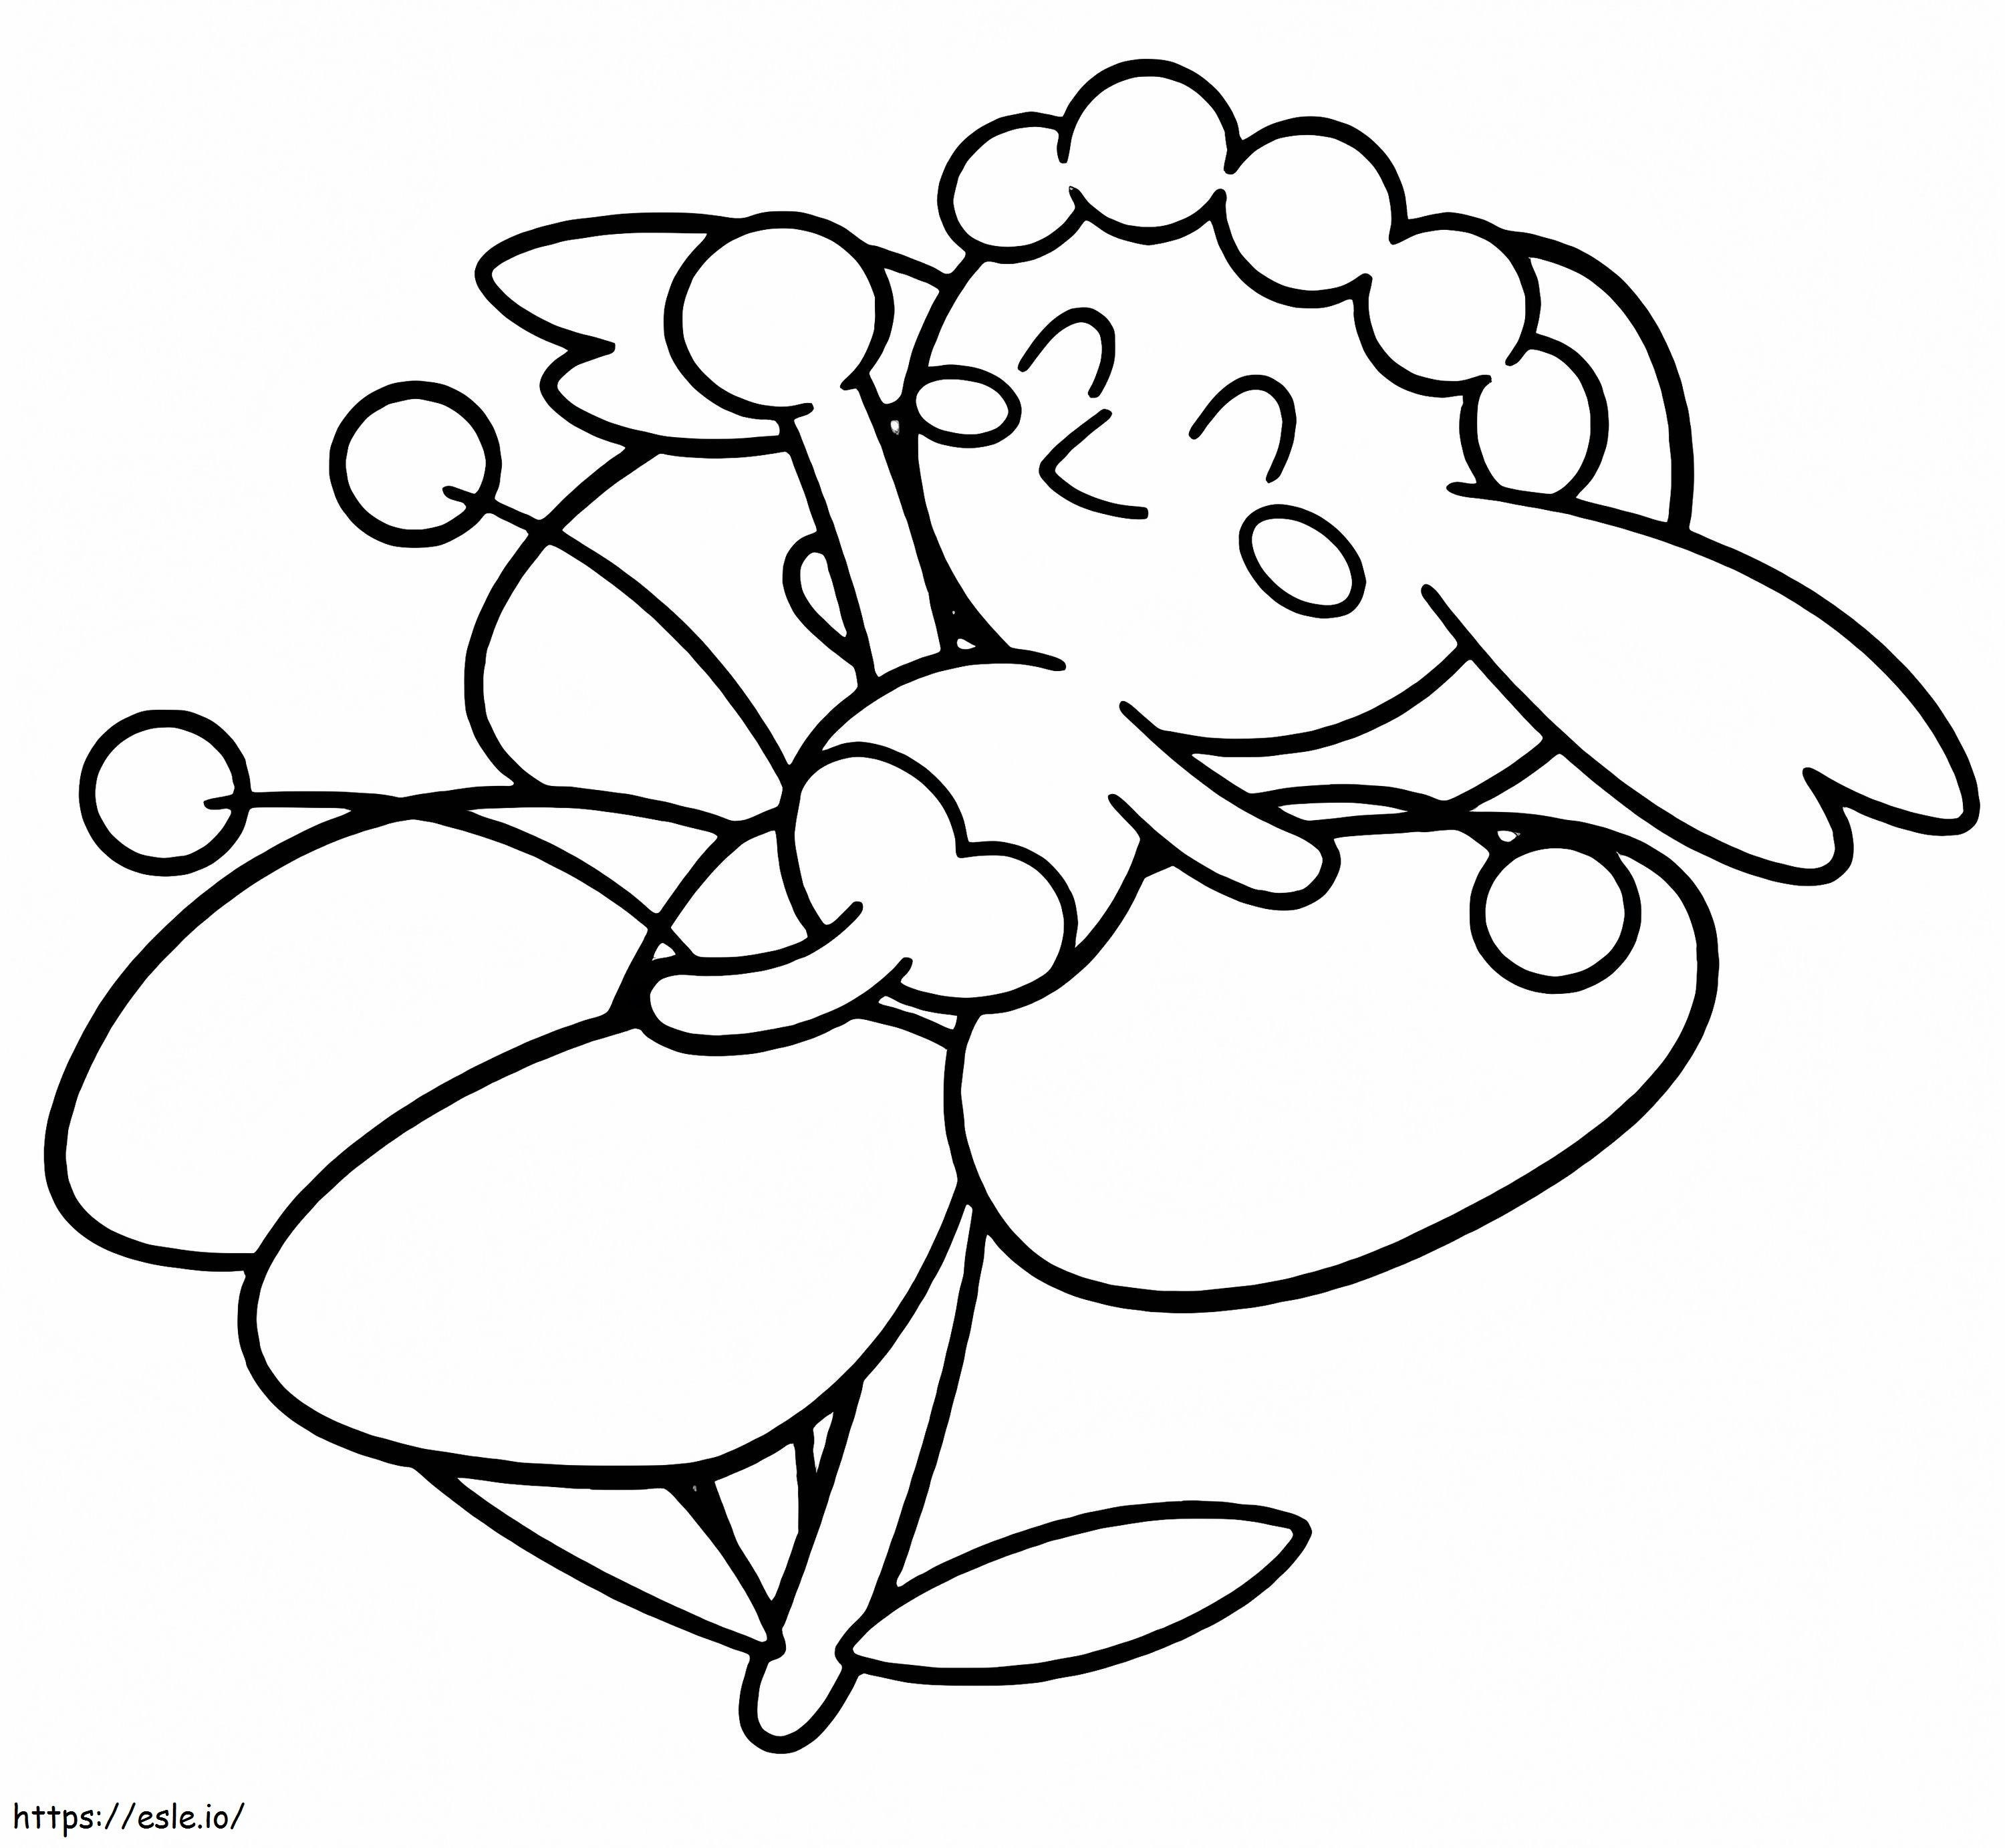 Coloriage Pokémon Flabébé mignon à imprimer dessin